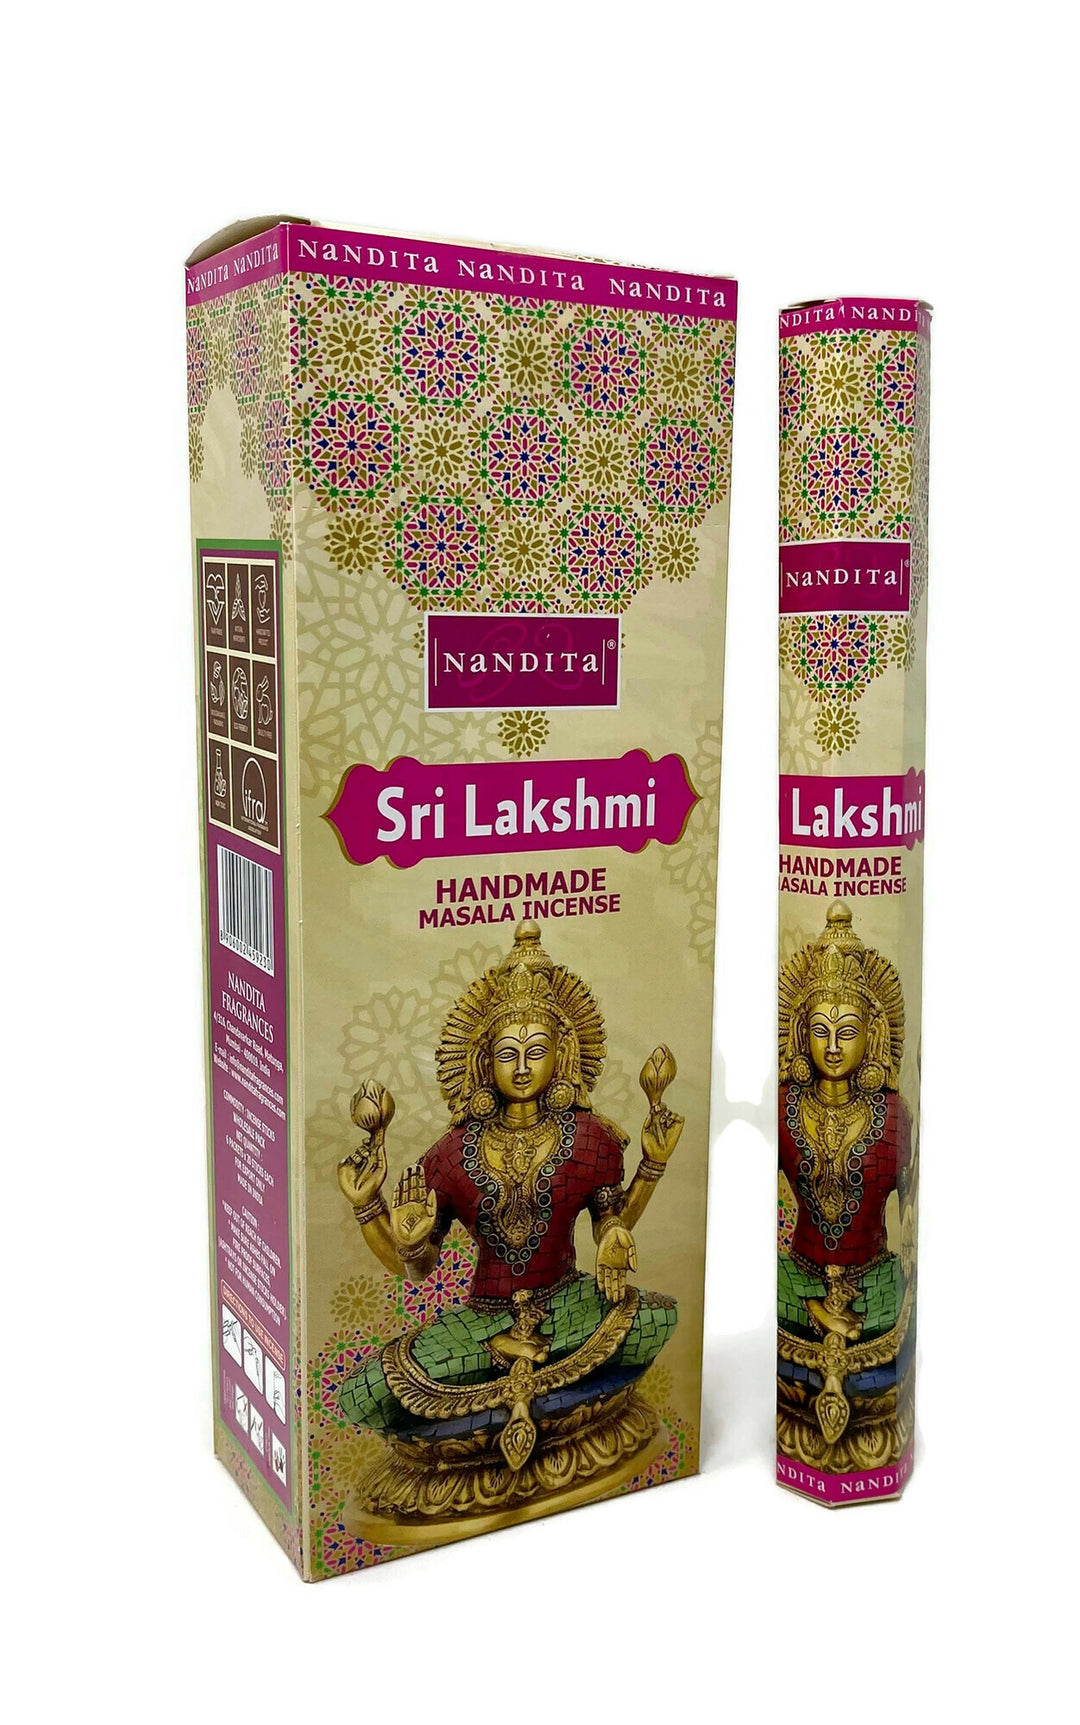 Nandita Masala Incense Sticks - Sri Lakshmi - 6 HEXA Tubes - Total 120 Sticks